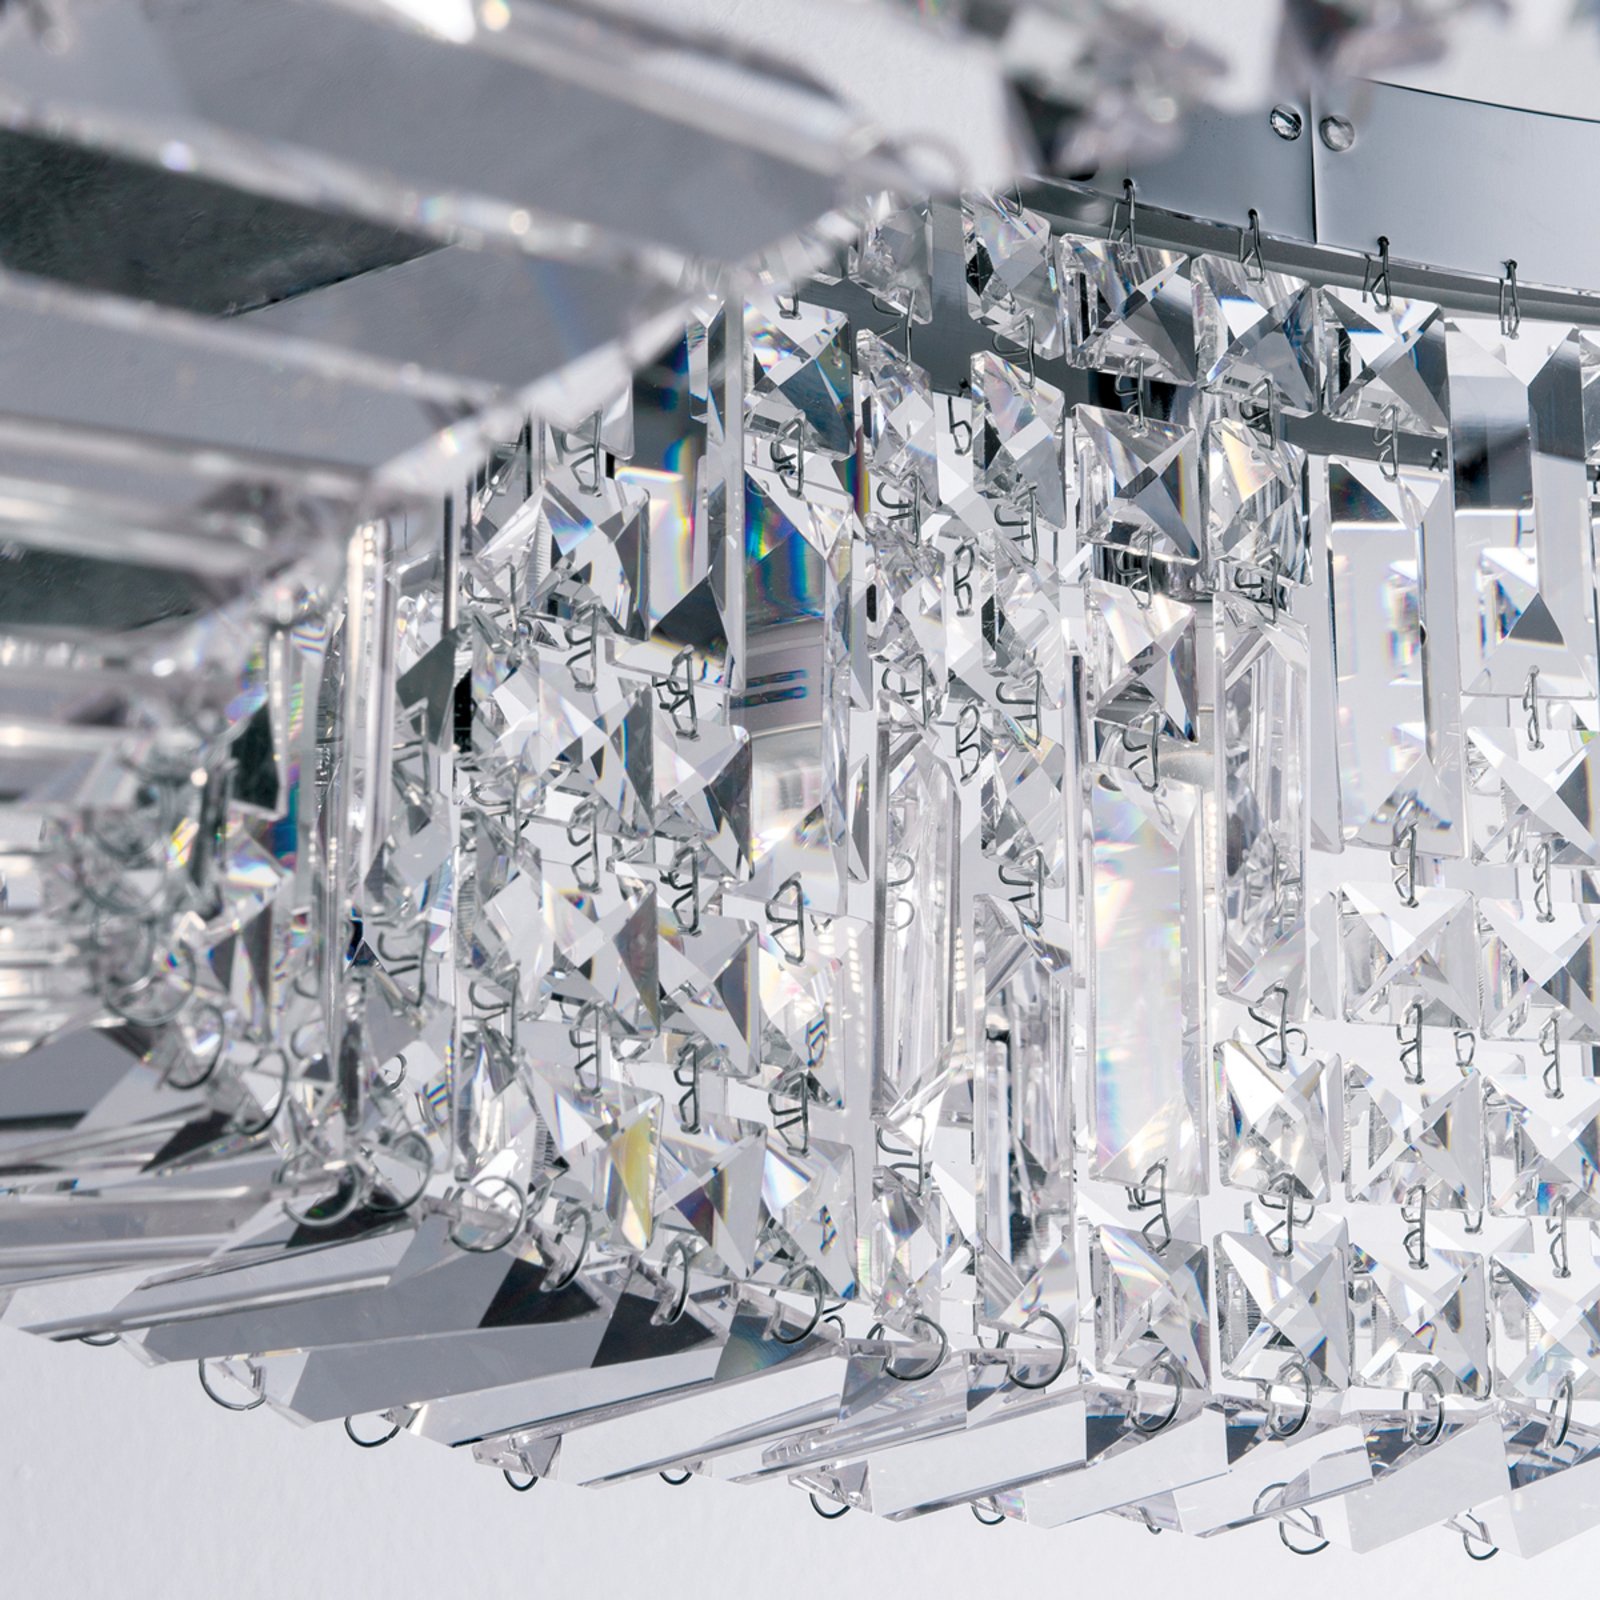 Fonkelende kristallen hanglamp Ring 80 cm chroom